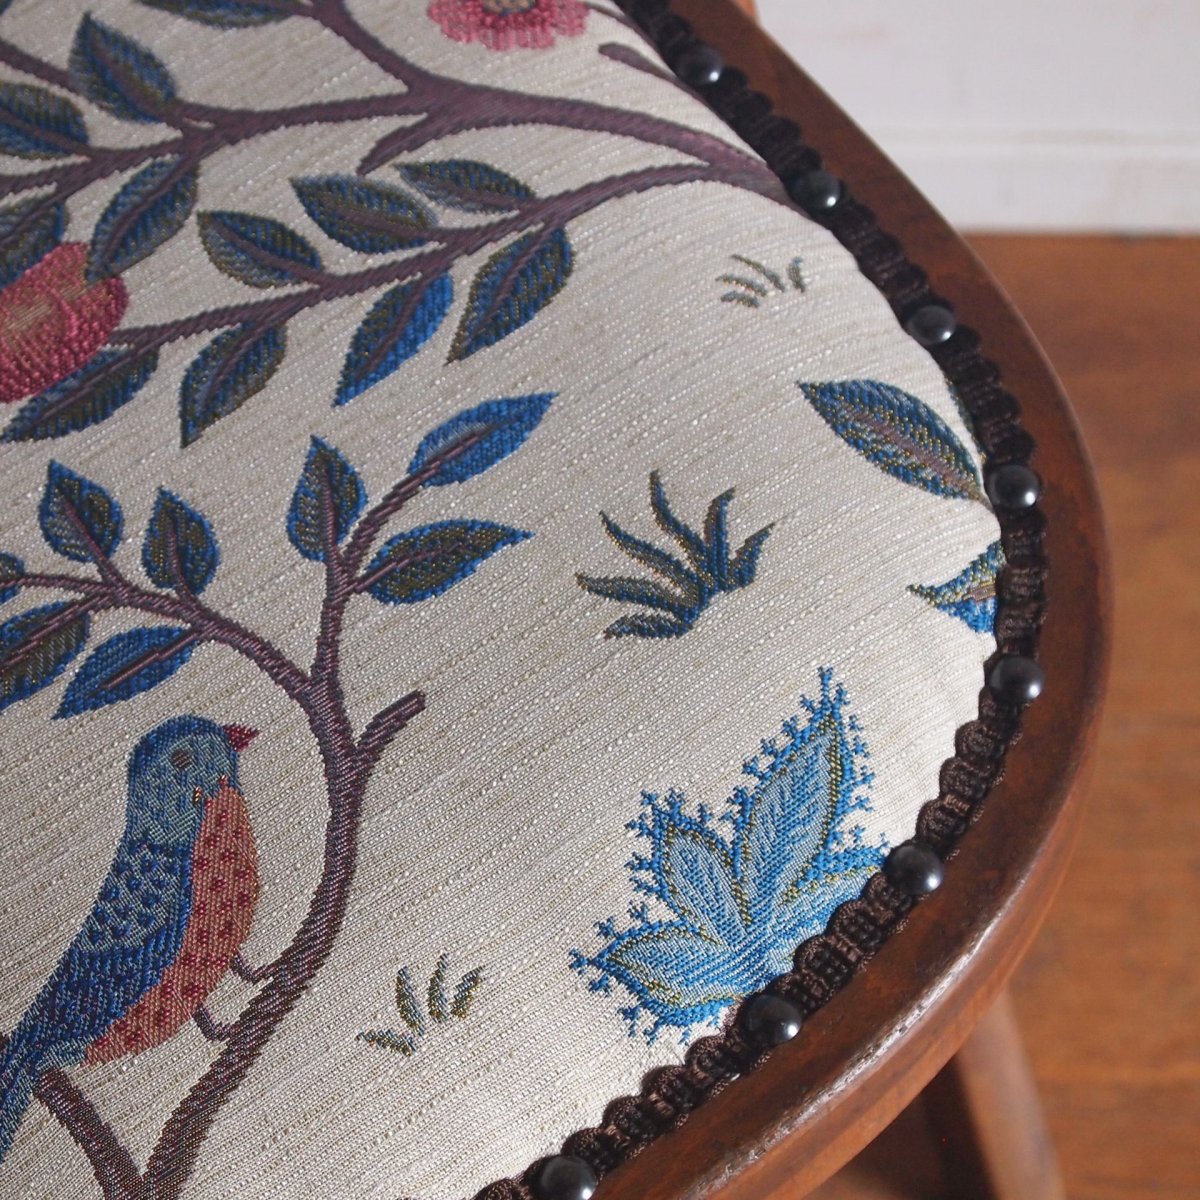 折り畳み椅子/William Morris - 古家具・古道具 アンティーク家具 kubu 